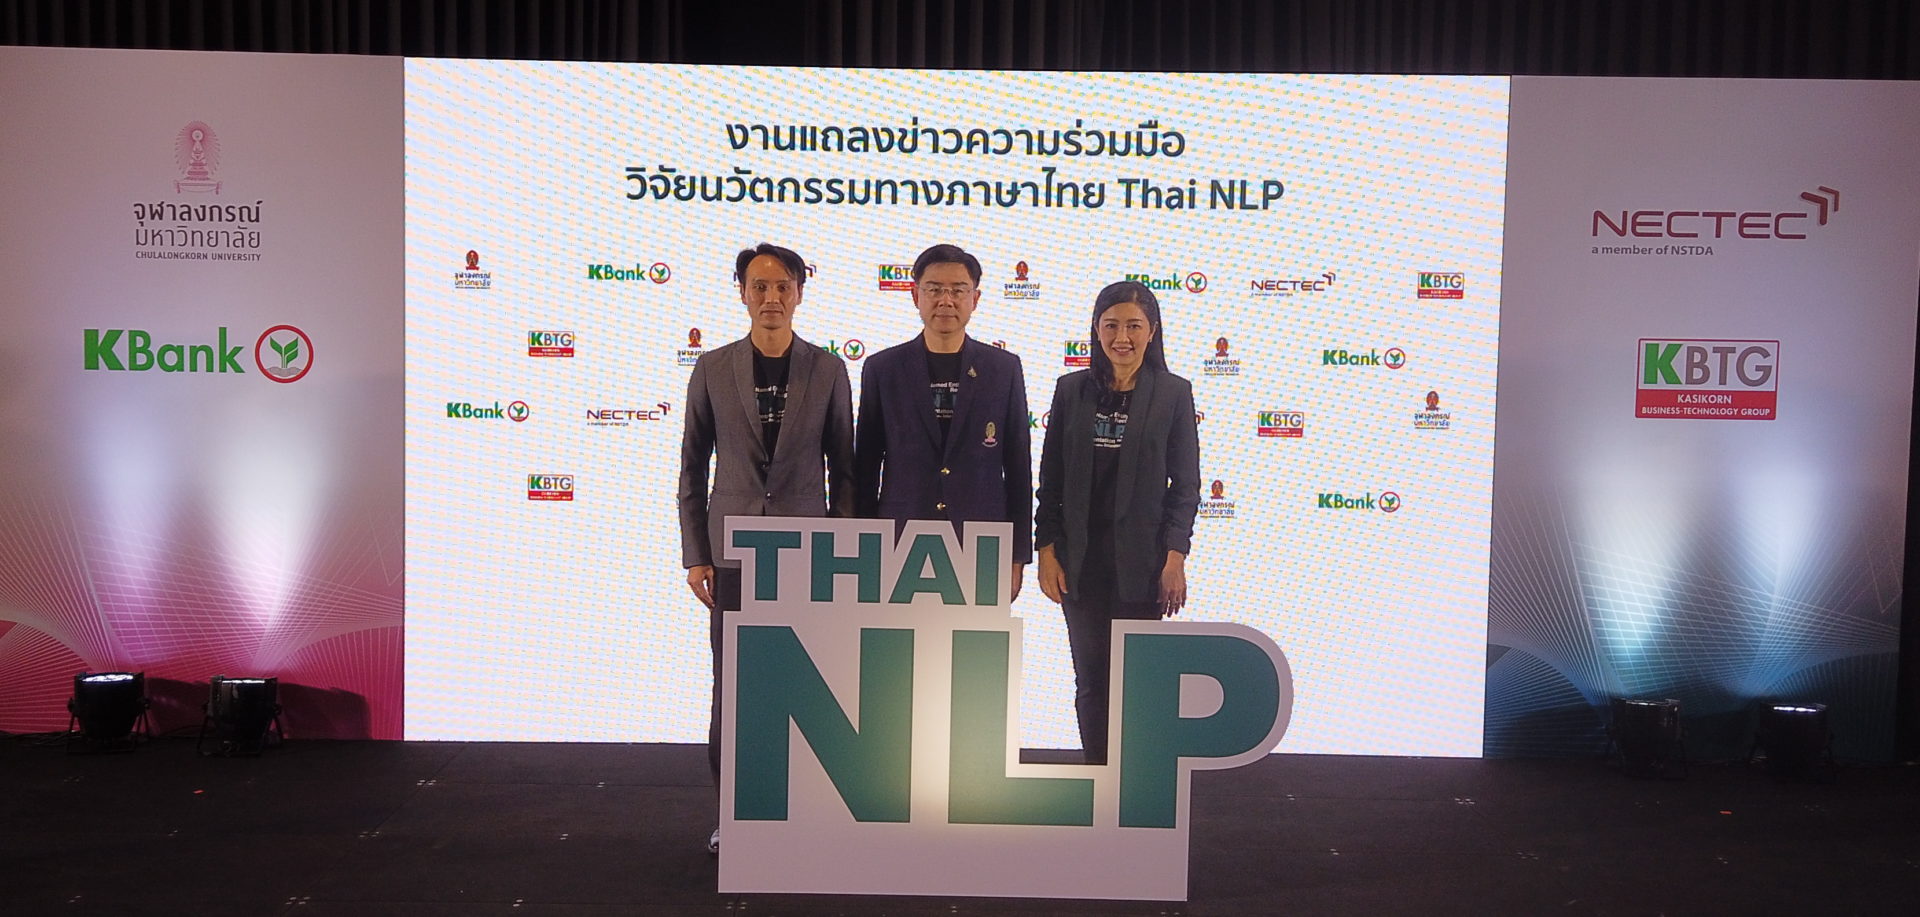 Thai NLP นวัตกรรมการประมวลผลภาษาไทย กับการร่วมมือของ 3 ยักษ์ใหญ่ต่างสาขา